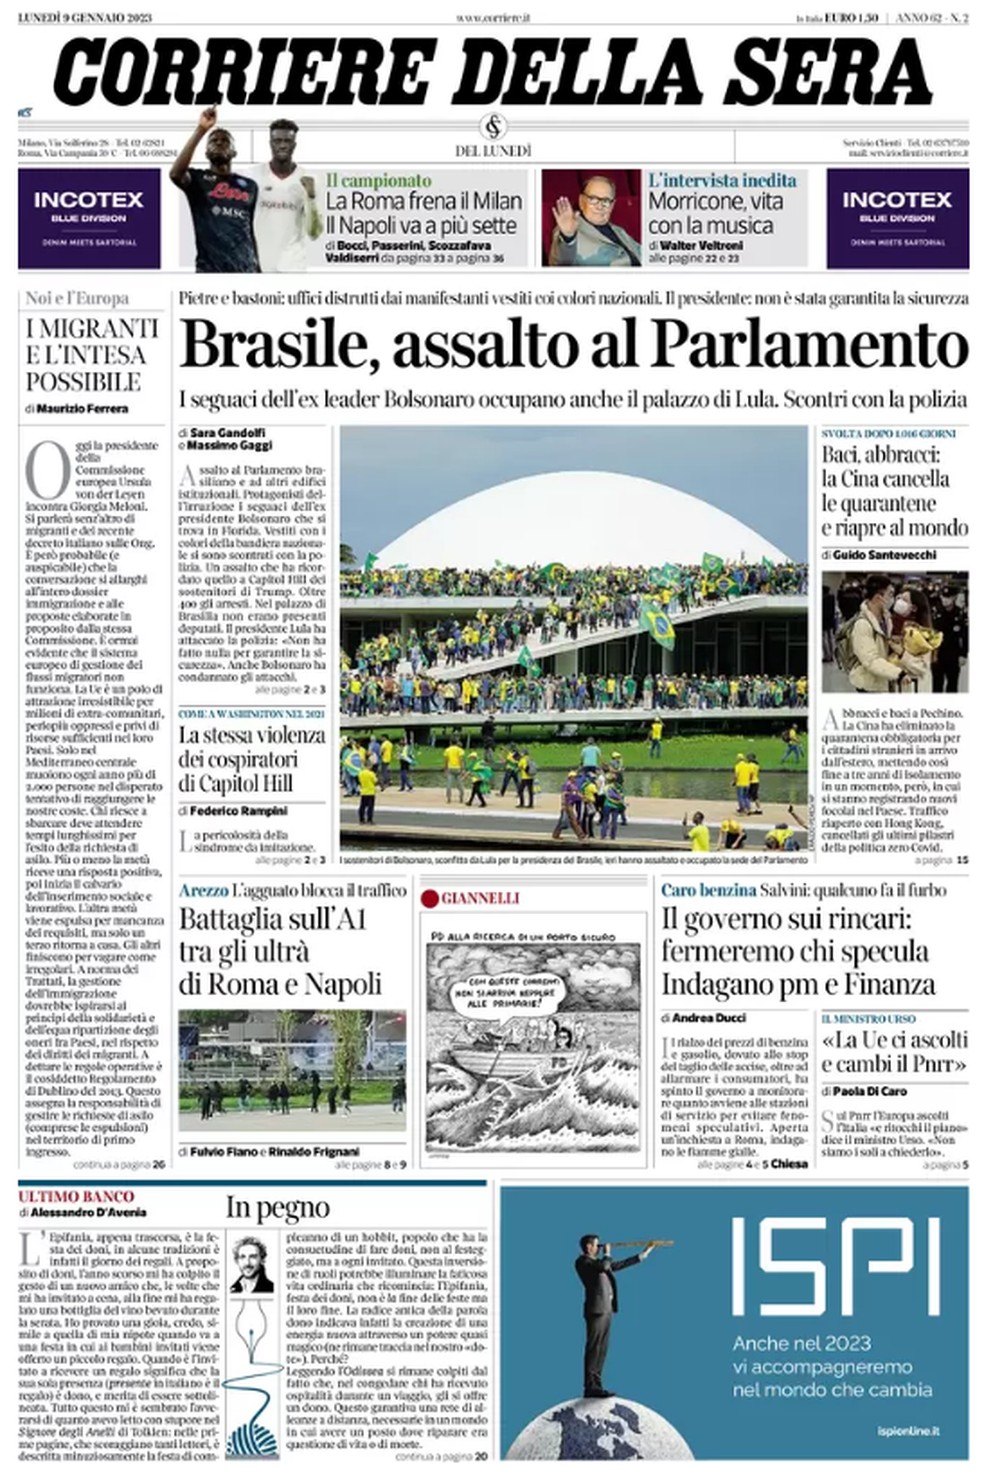 Capa do jornal Corriere Della Sera de 9 de janeiro de 2023.  — Foto: Reprodução 